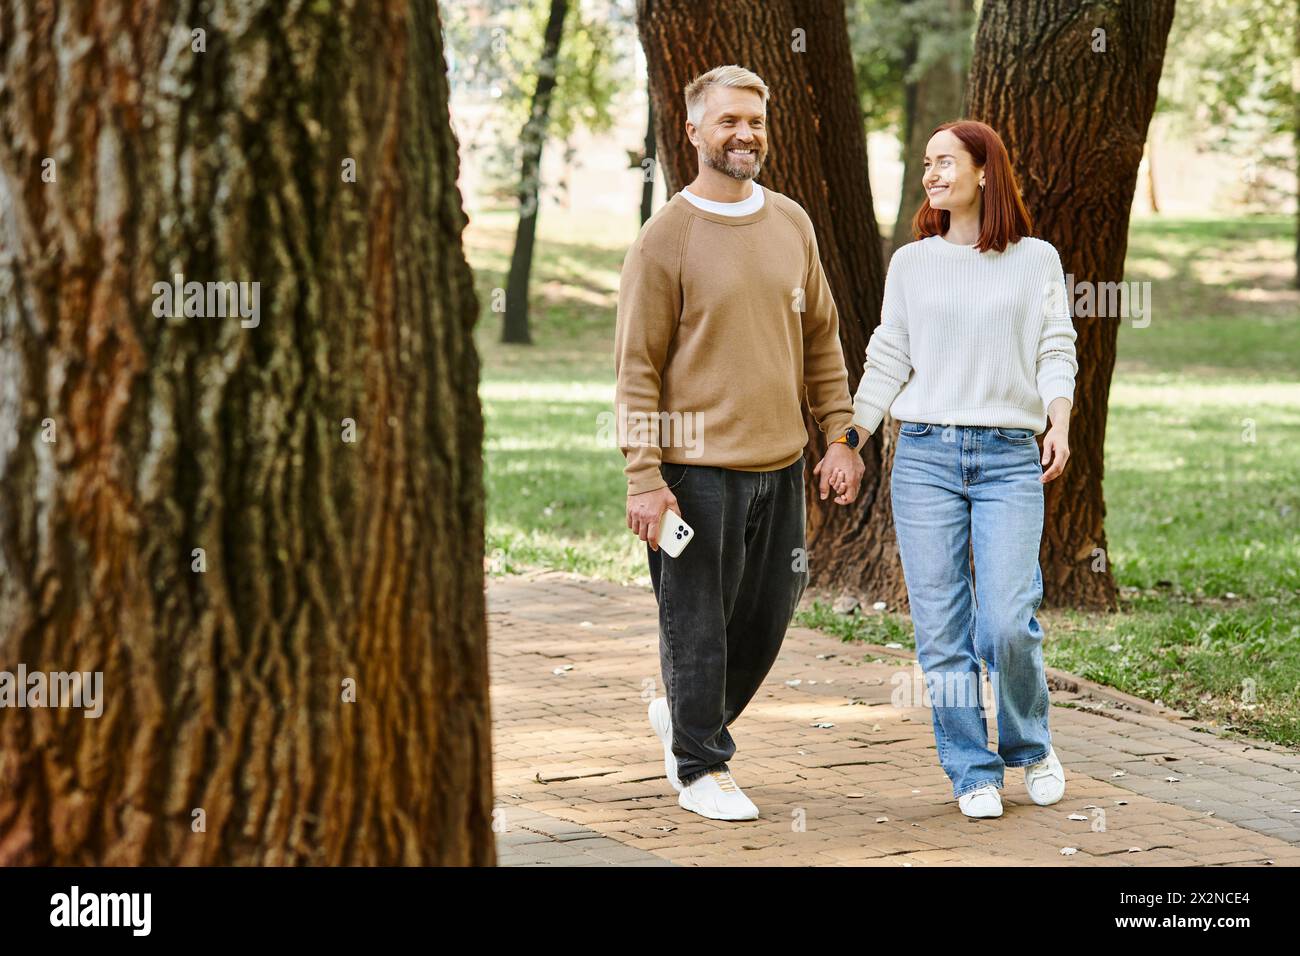 Ein Mann und eine Frau in lässiger Kleidung spazieren zusammen in einer friedlichen Parklandschaft. Stockfoto